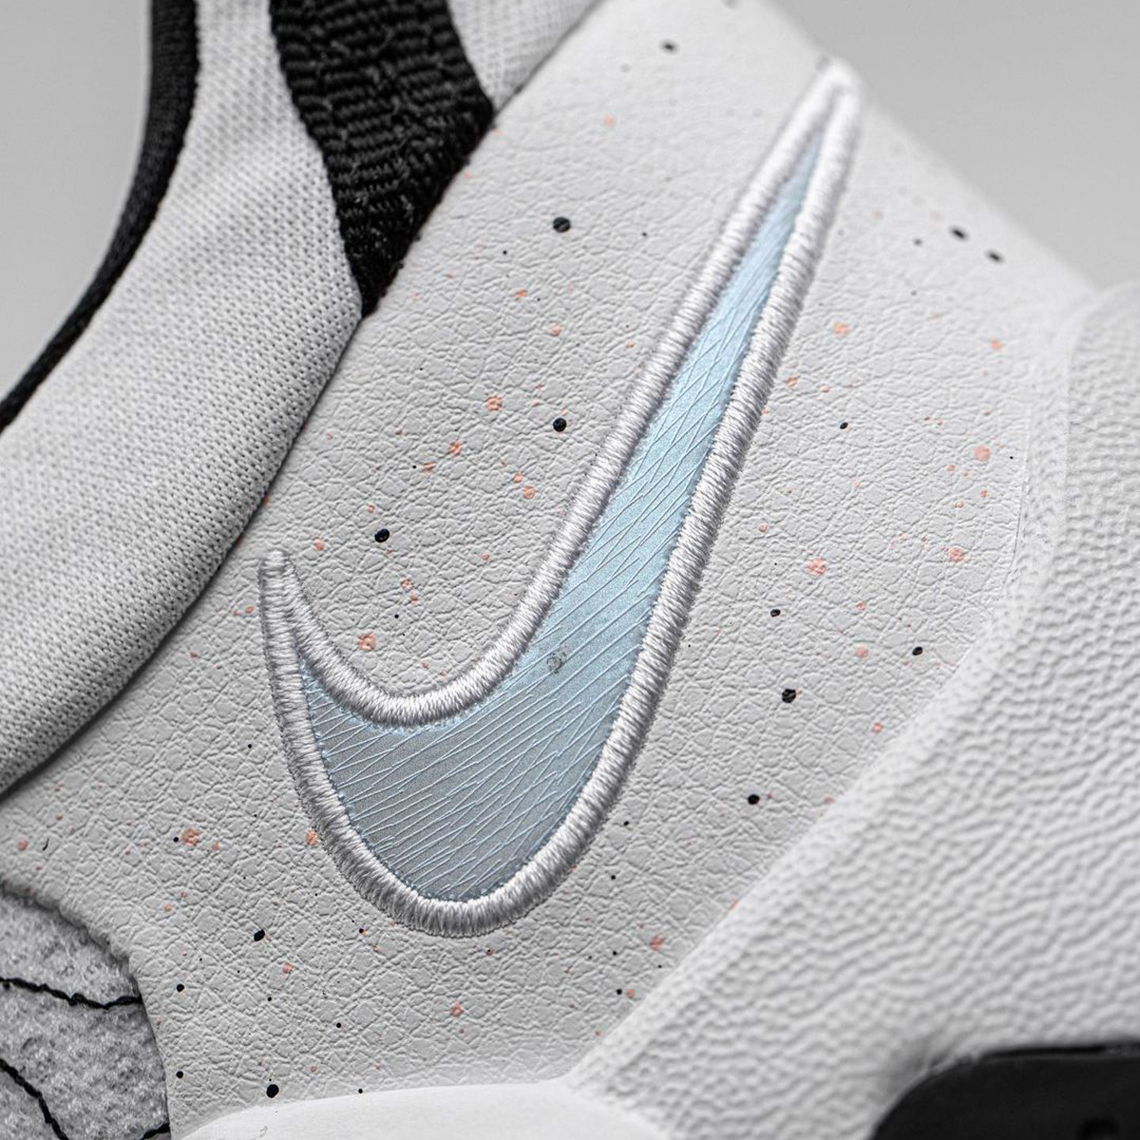 Nike Pg 5 Black White 2021 Release Info 2